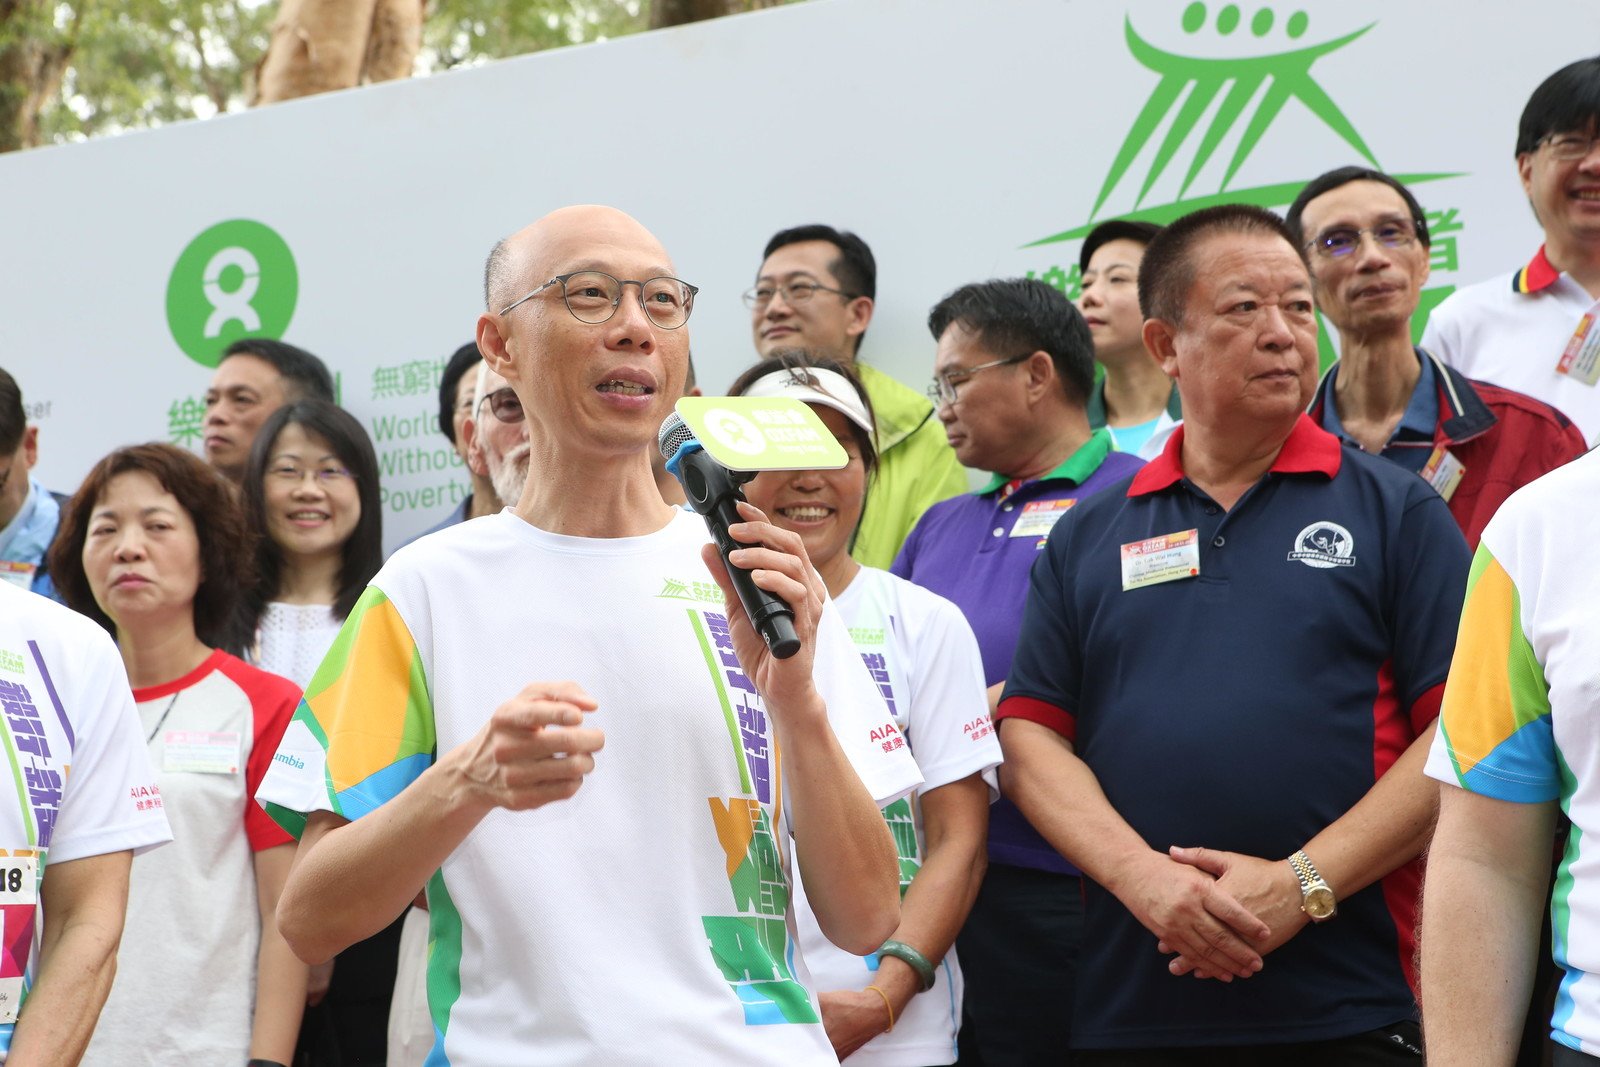 環境局局長黃錦星於「樂施毅行者2018」起步禮上為參加者打氣。 